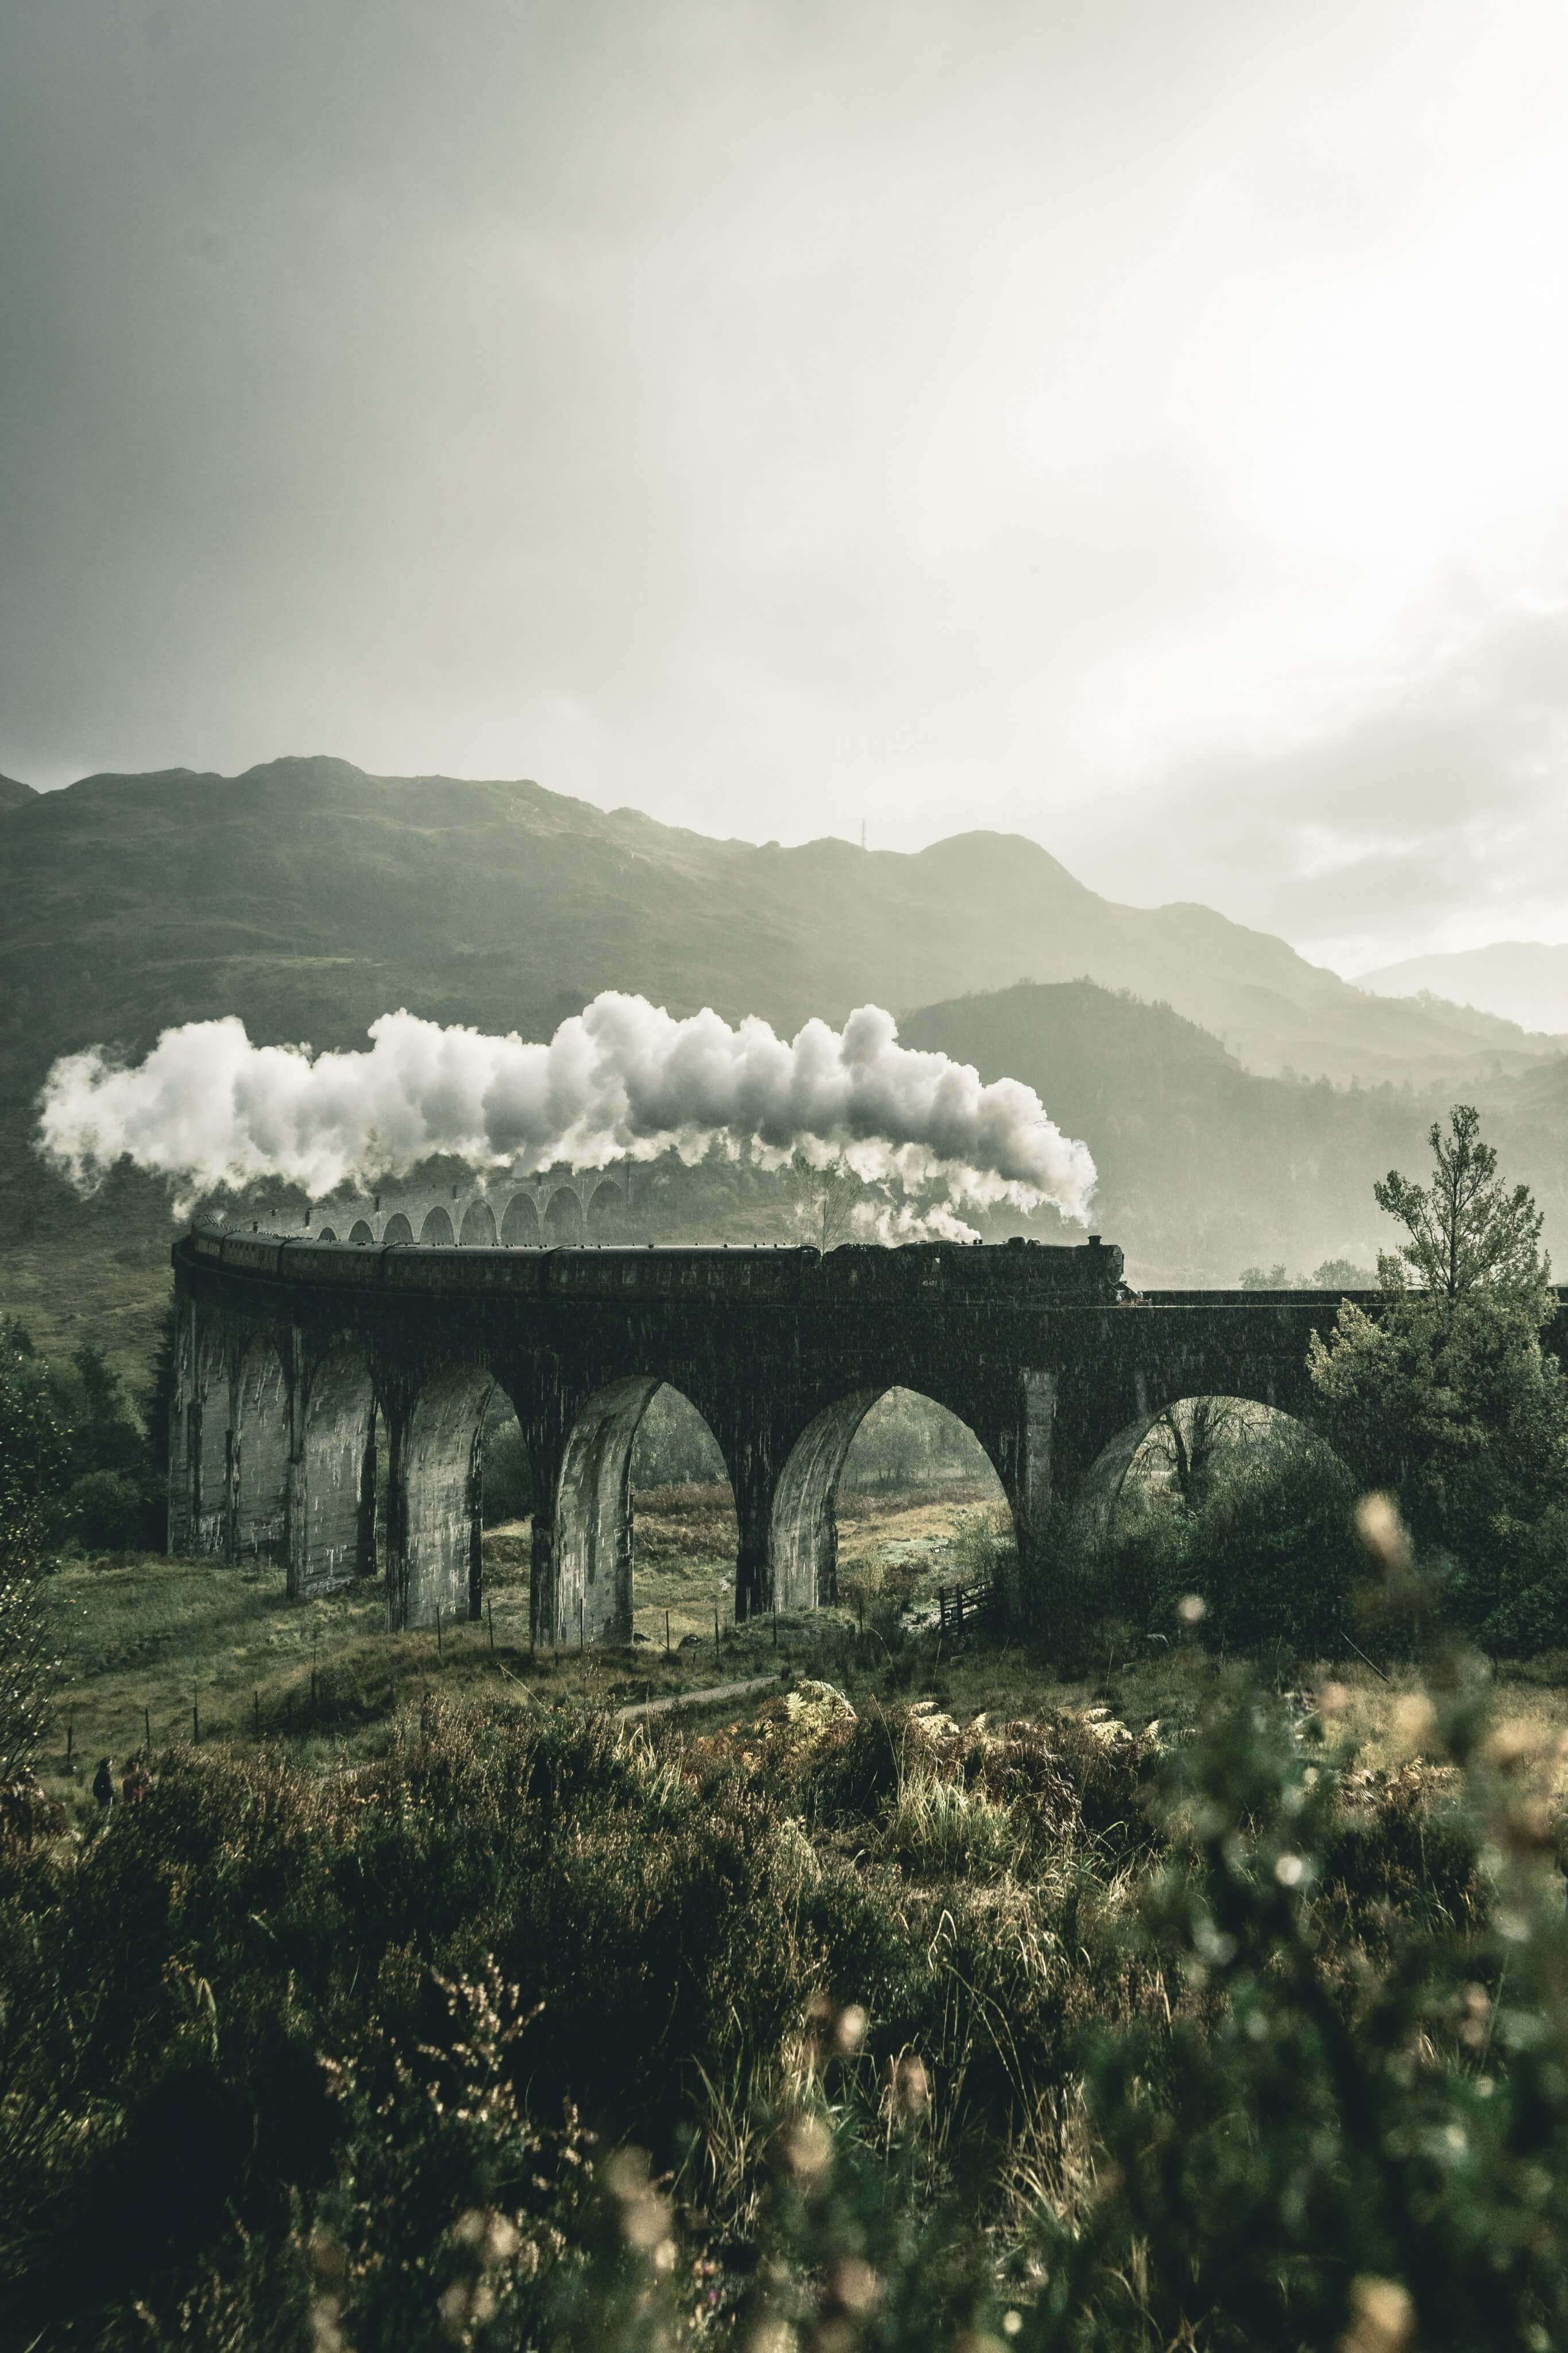 Ein Zug fährt über eine Brücke.